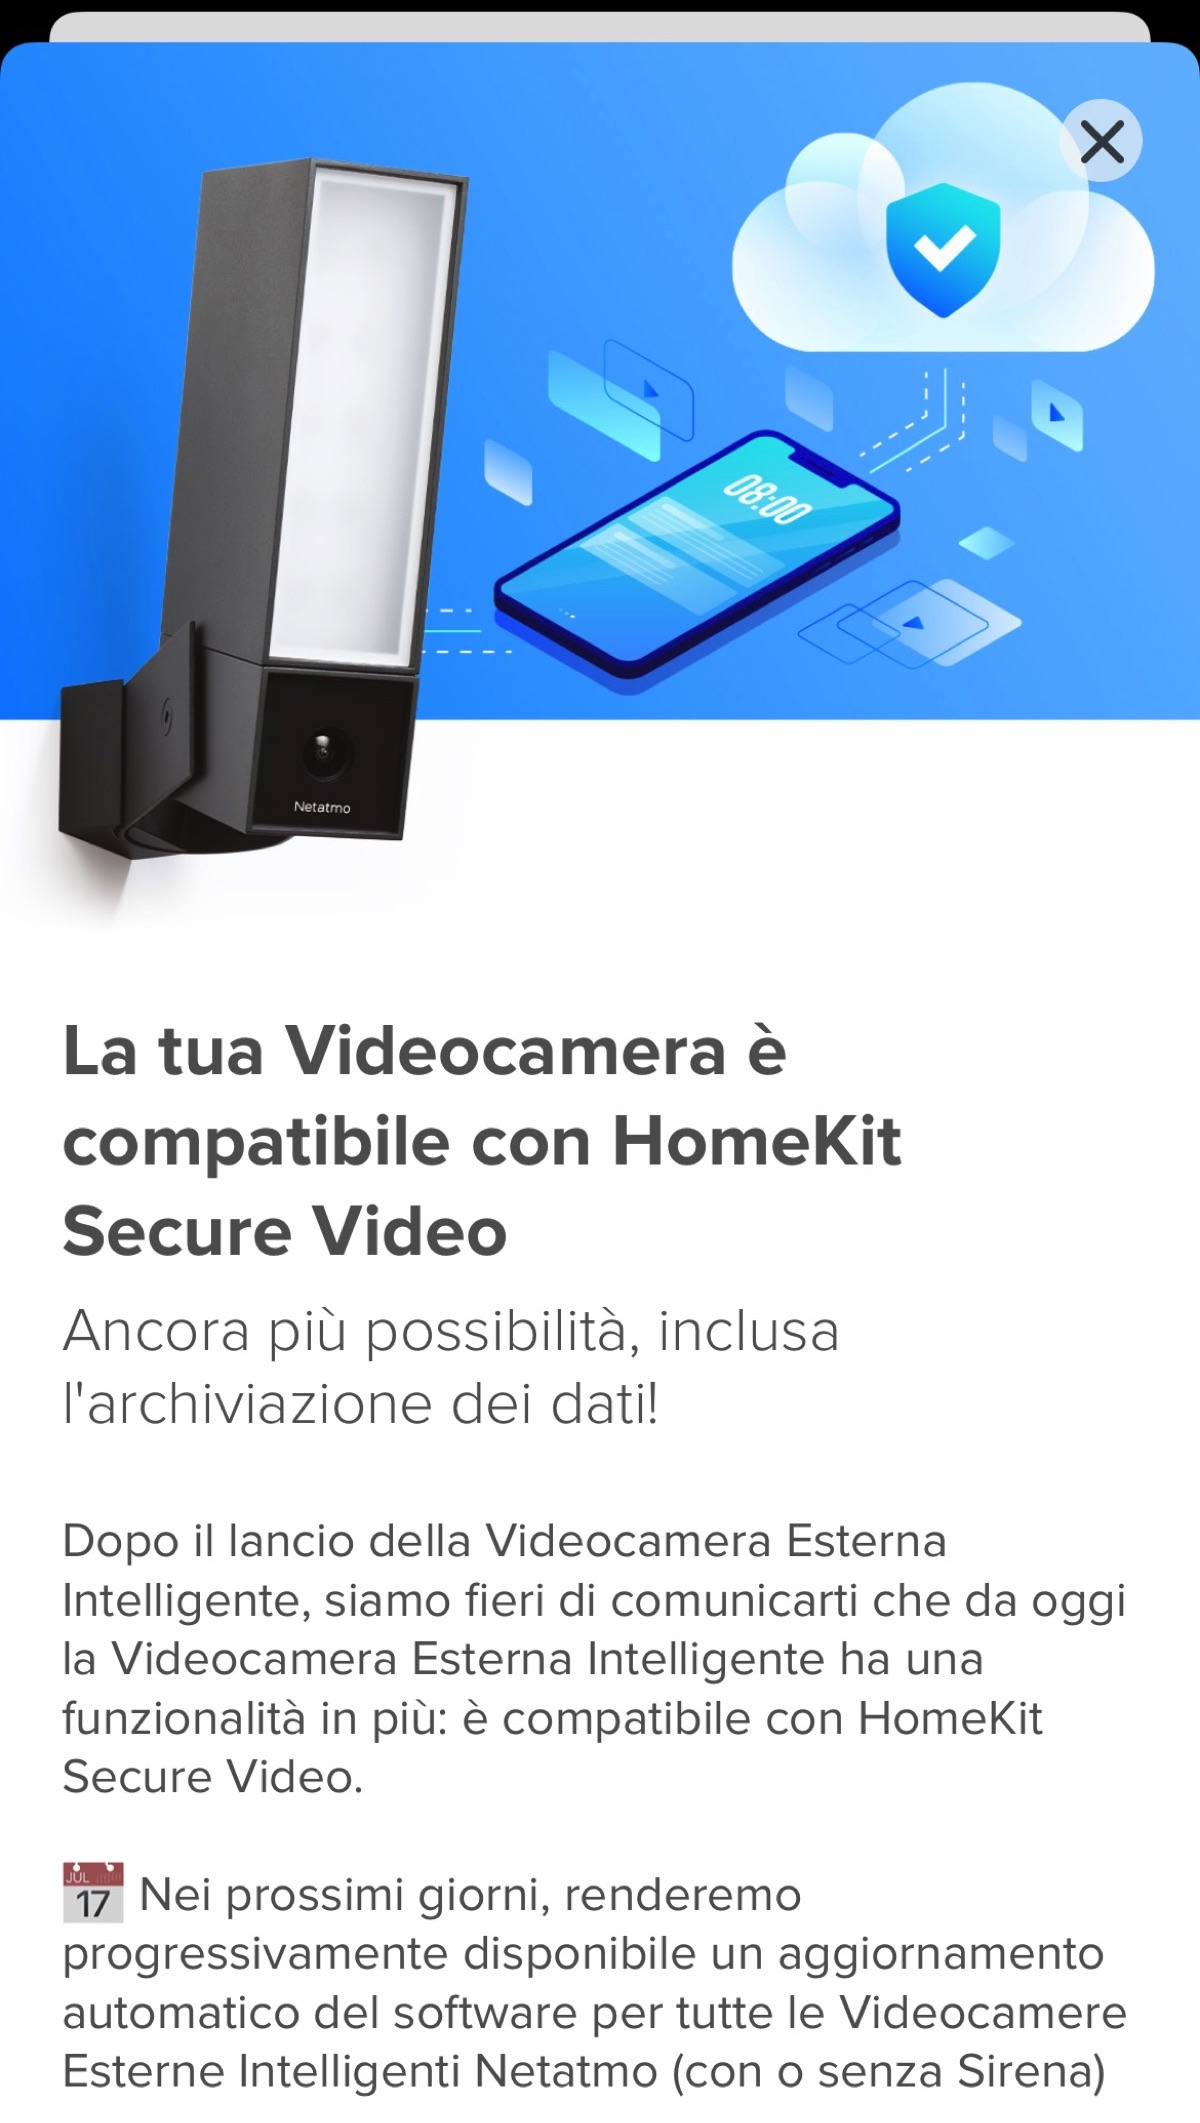 La videocamera esterna intelligente Netatmo ora compatibile con Homekit Secure Video